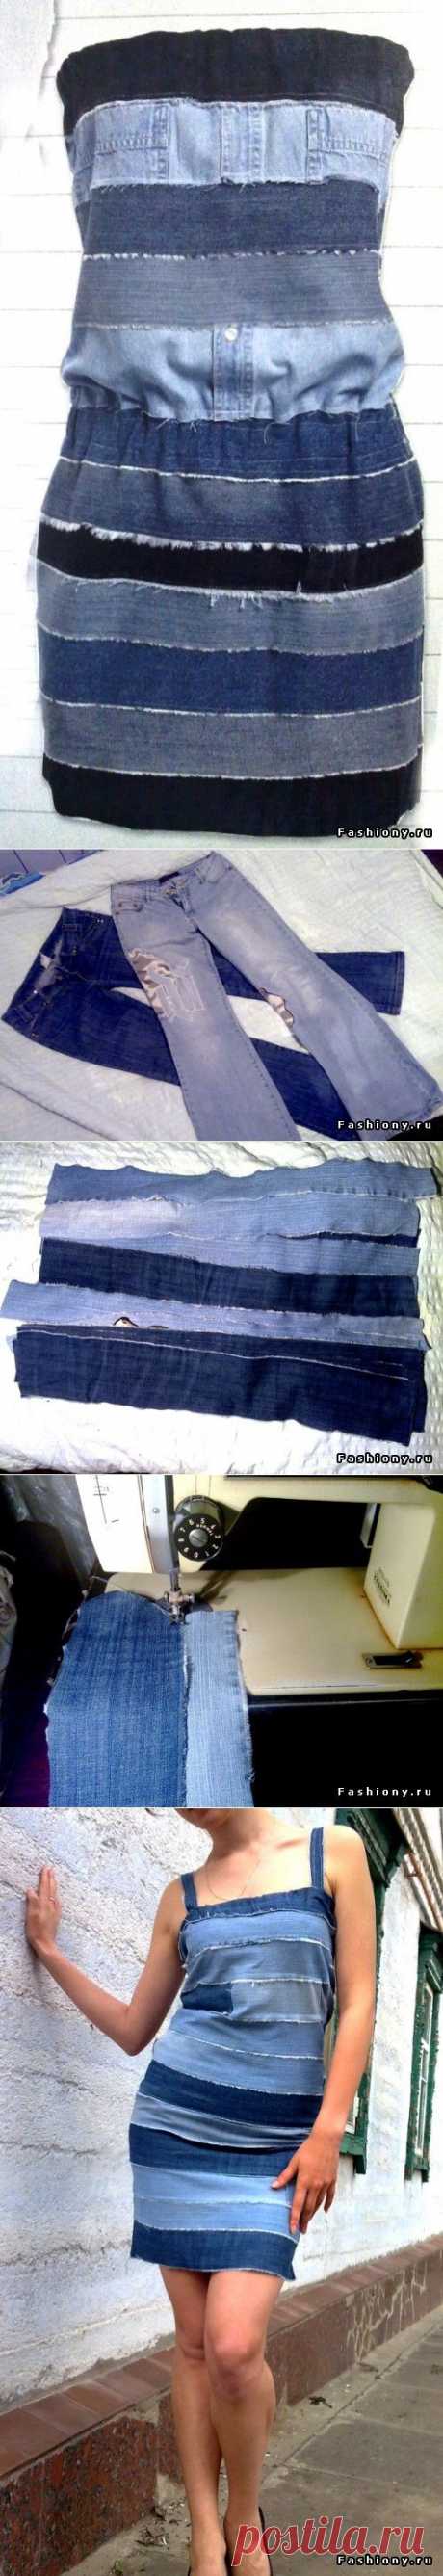 Платье из джинсов МК / сшить юбку из старых джинсов